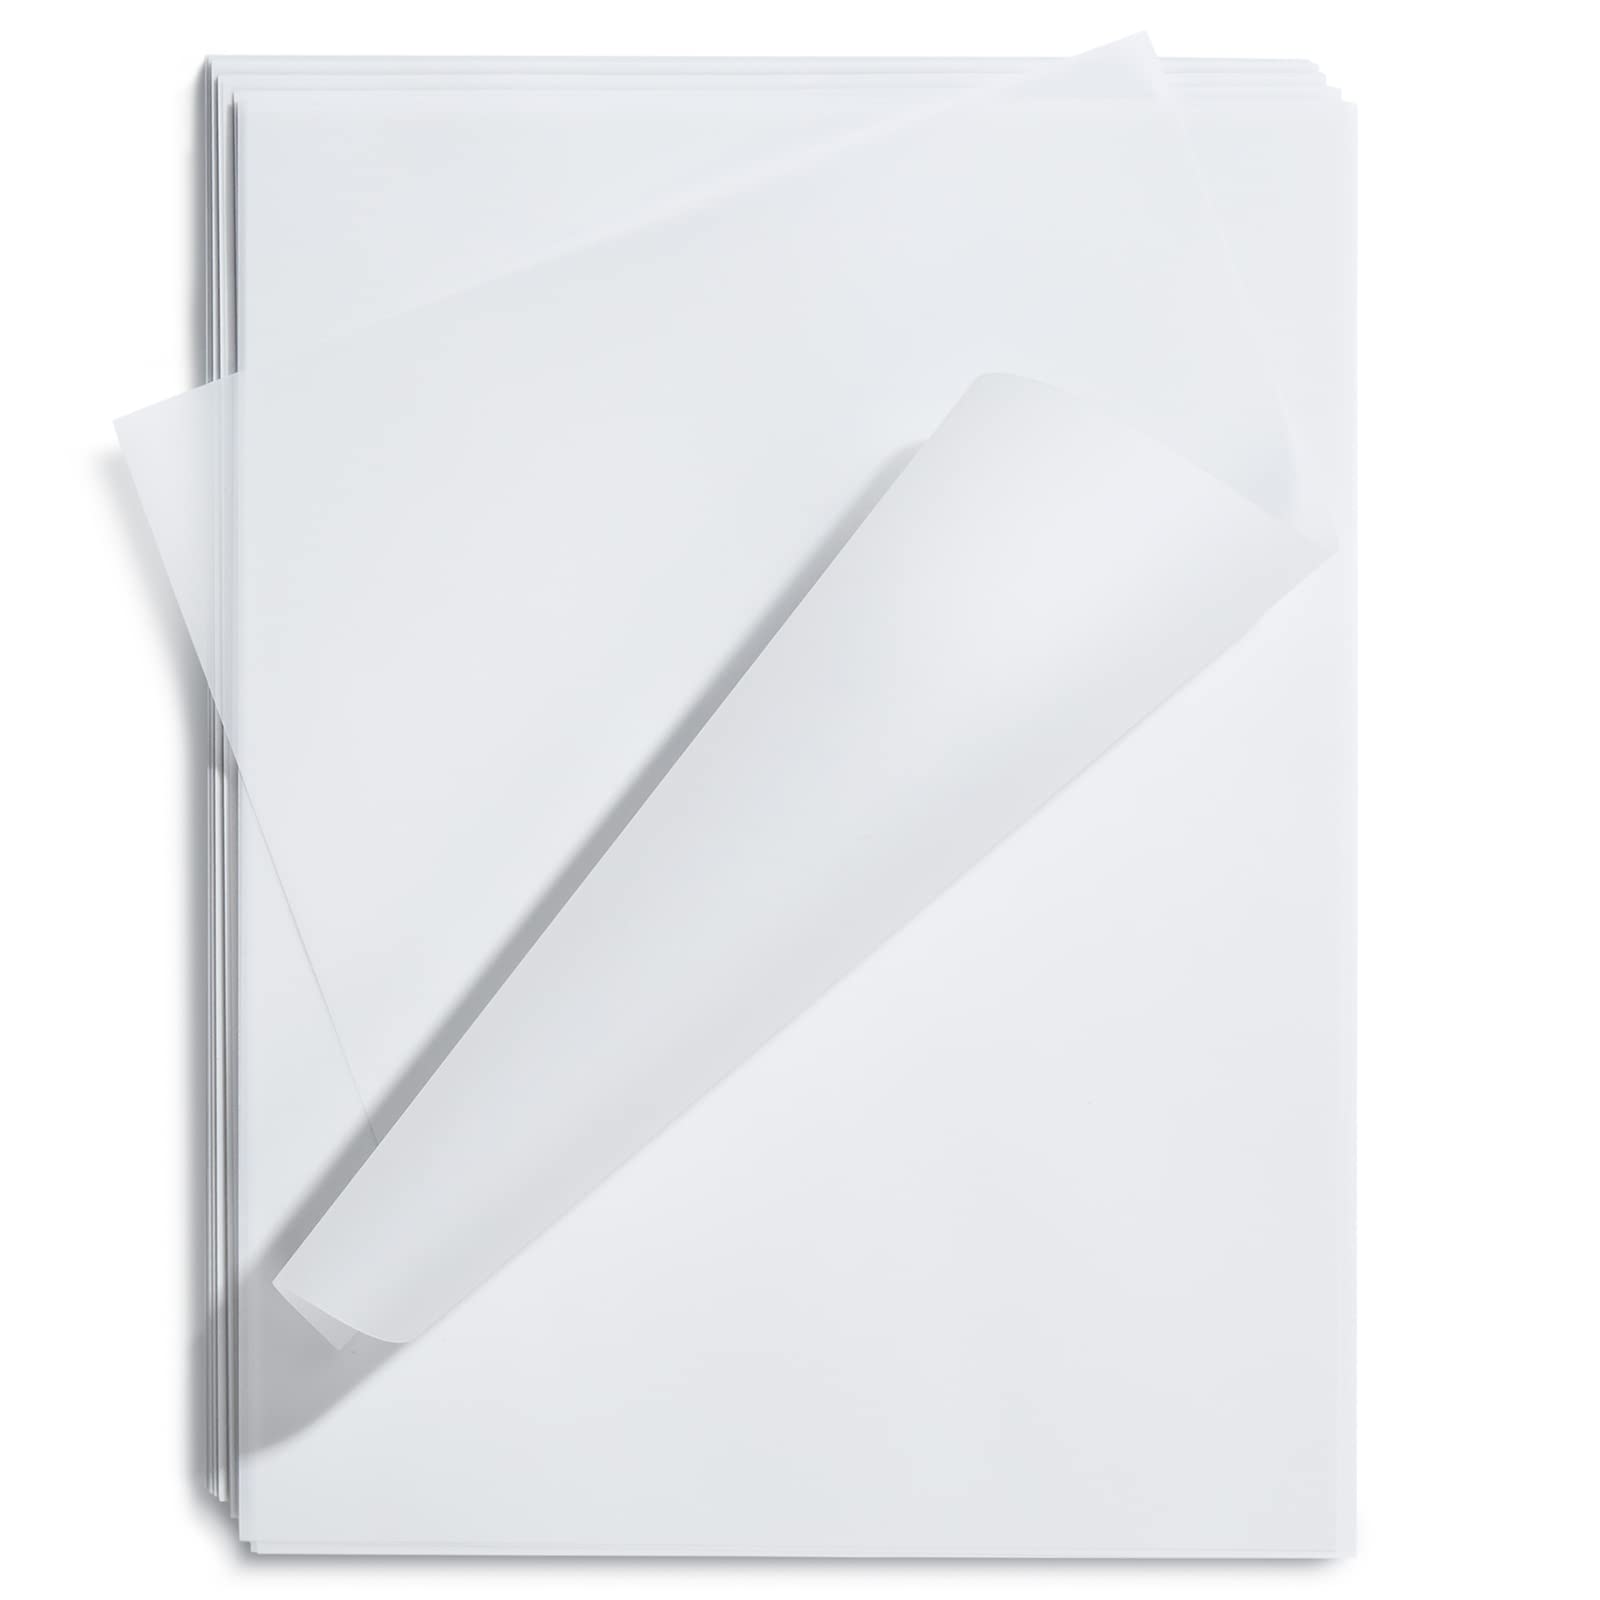  Transparency Sheets Papel transparente, 45 hojas de